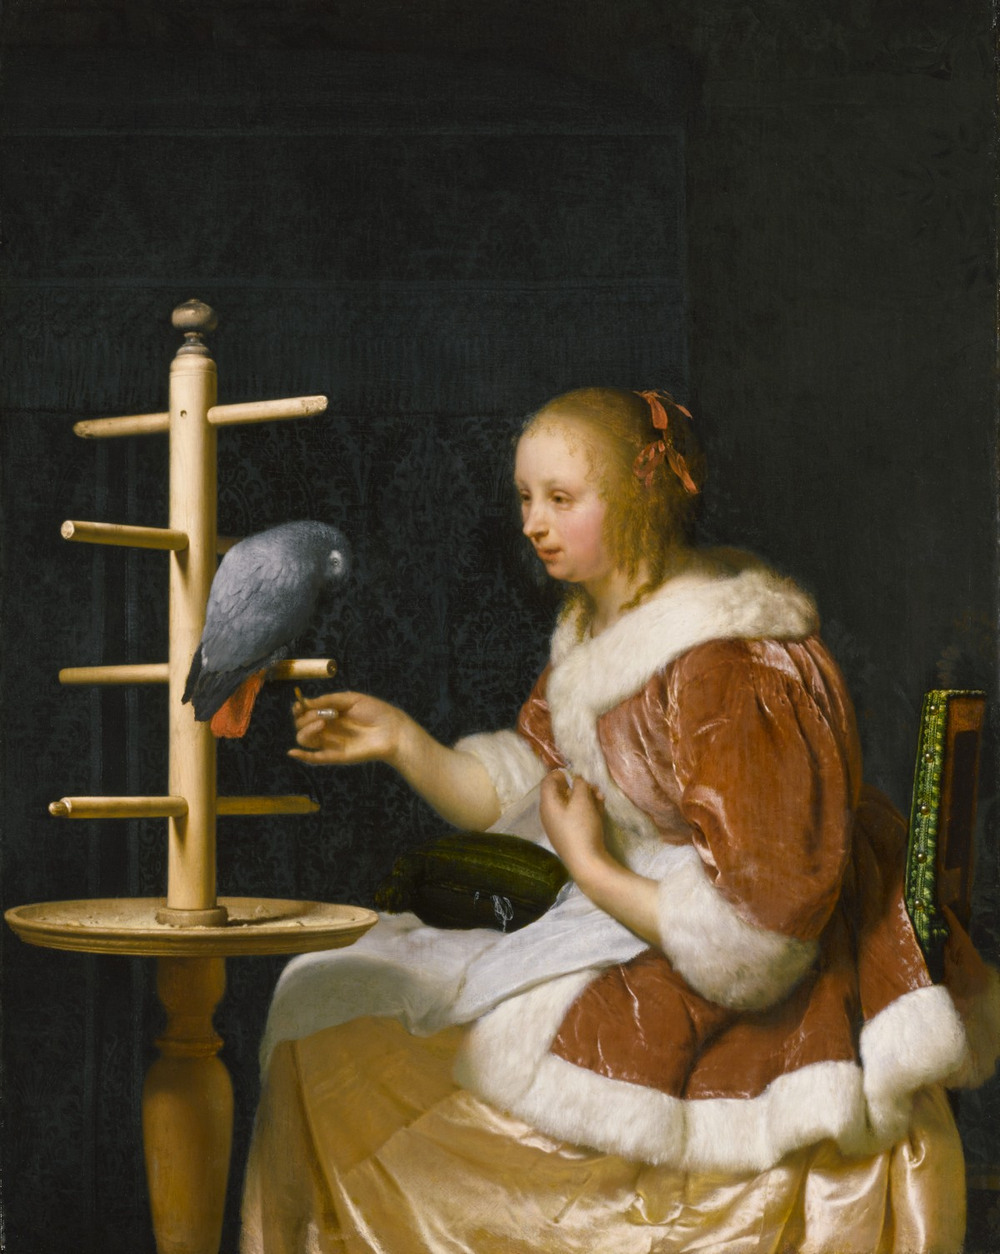 Лейденская коллекция доступна онлайн. Частный коллекционер опубликовал картины золотого века голландской живописи  4